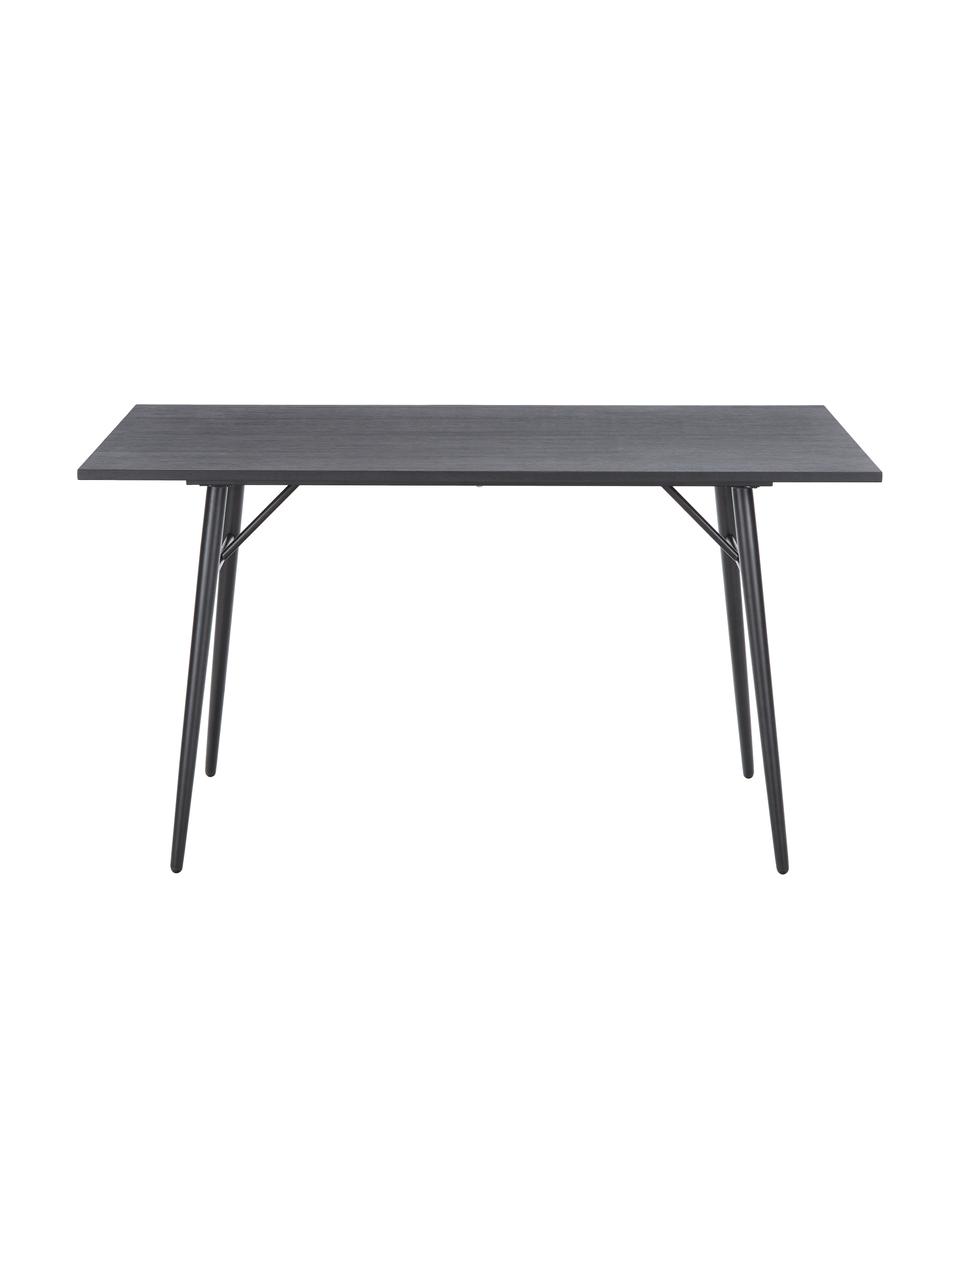 Holztisch Jette mit Metallgestell, Tischplatte: Eichenholzfurnier, lackie, Beine: Metall, pulverbeschichtet, Schwarz, B 140 x T 80 cm